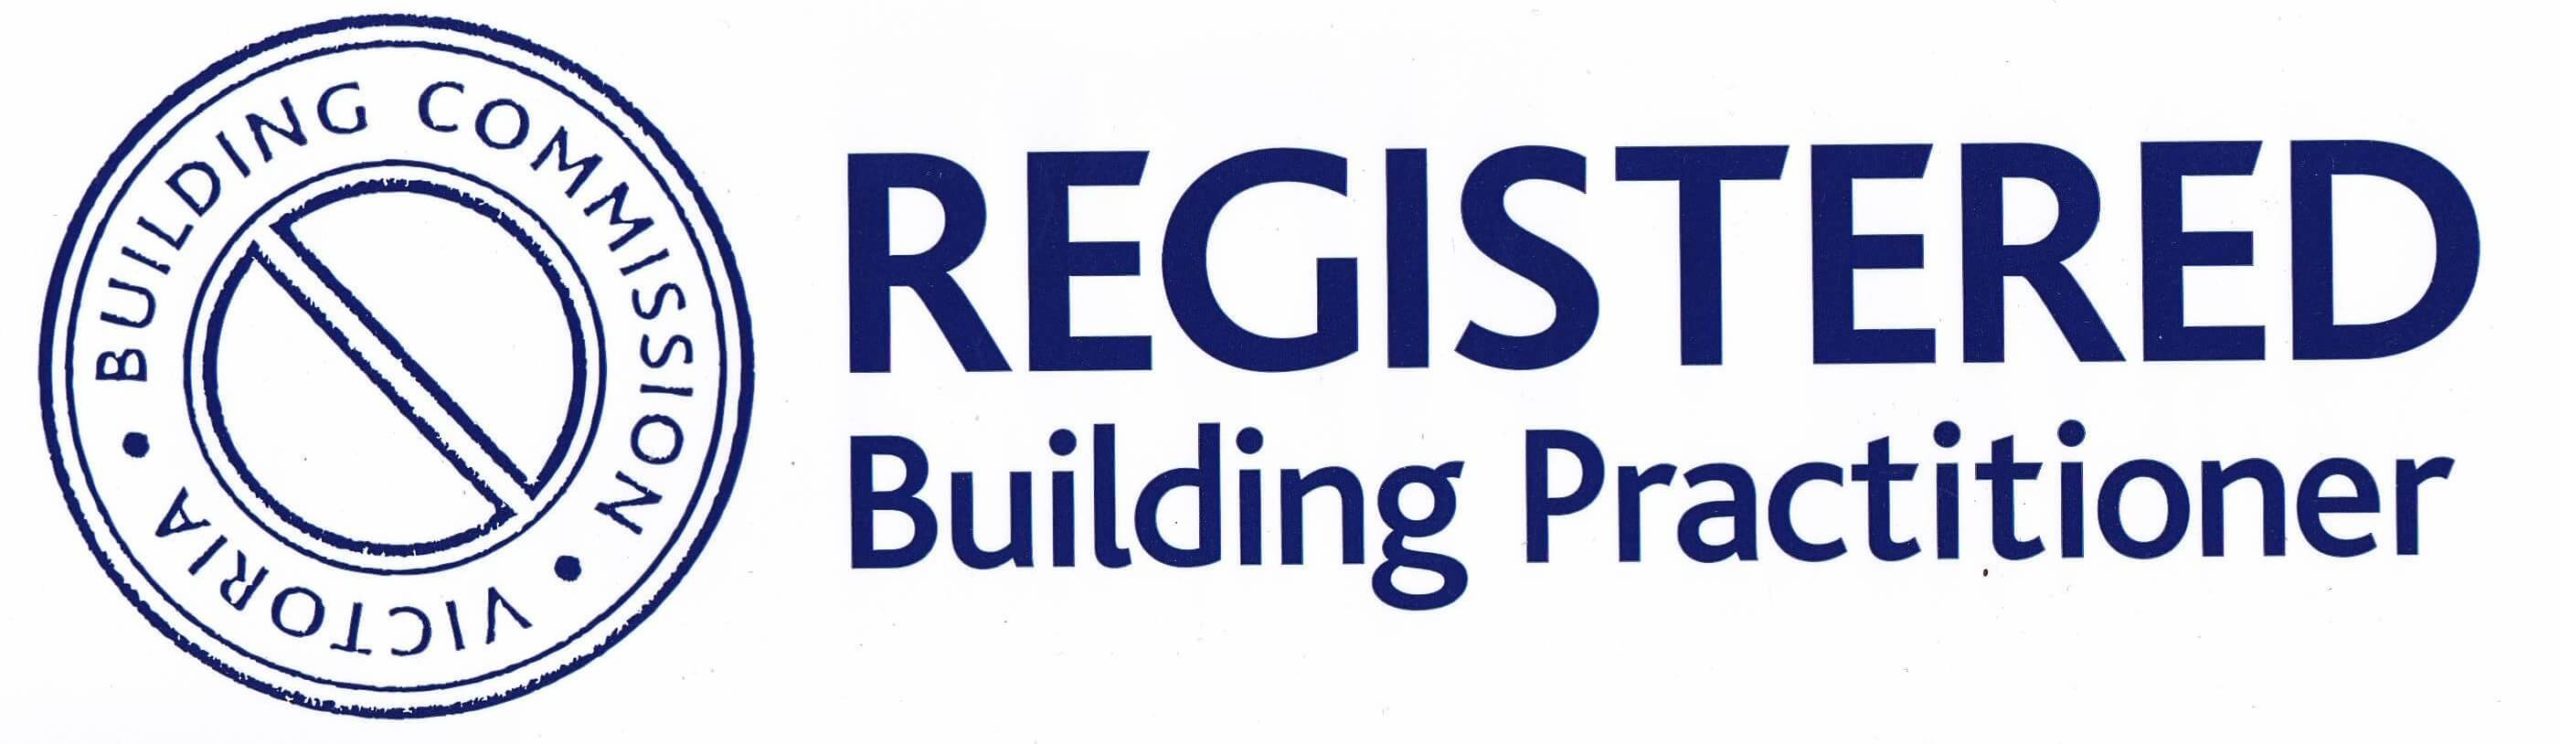 registered-building-practitioner-logo